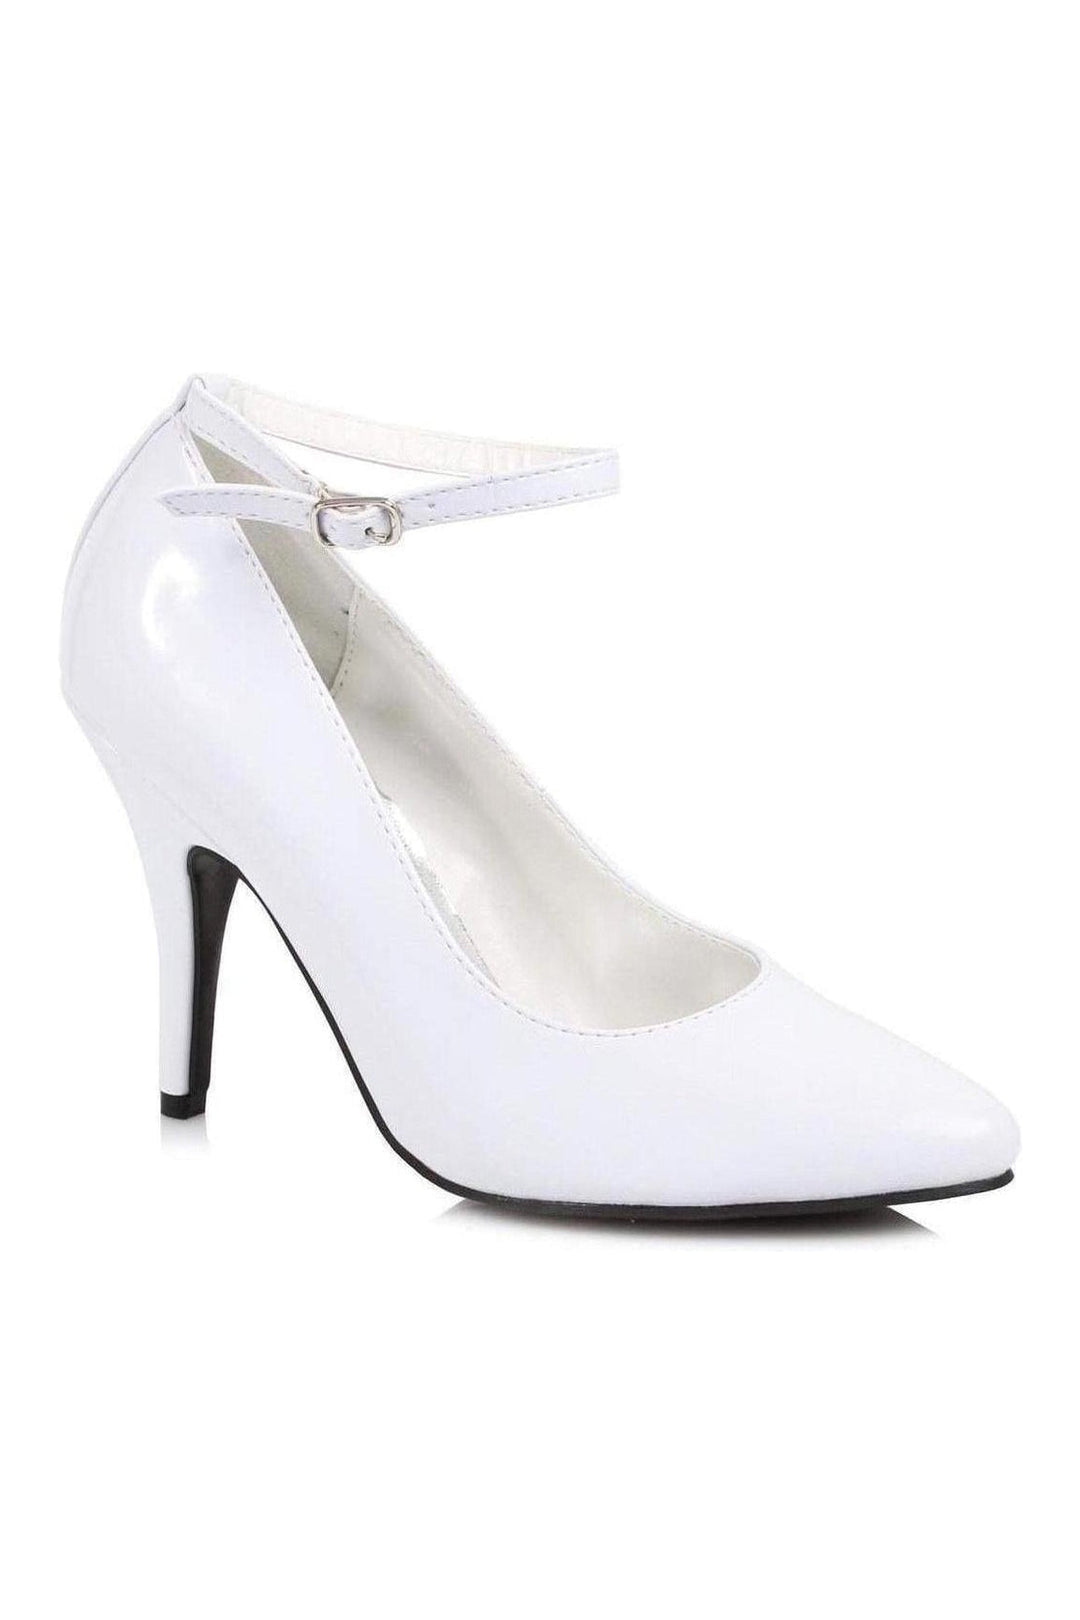 8401 Pump | White Patent-Ellie Shoes-SEXYSHOES.COM